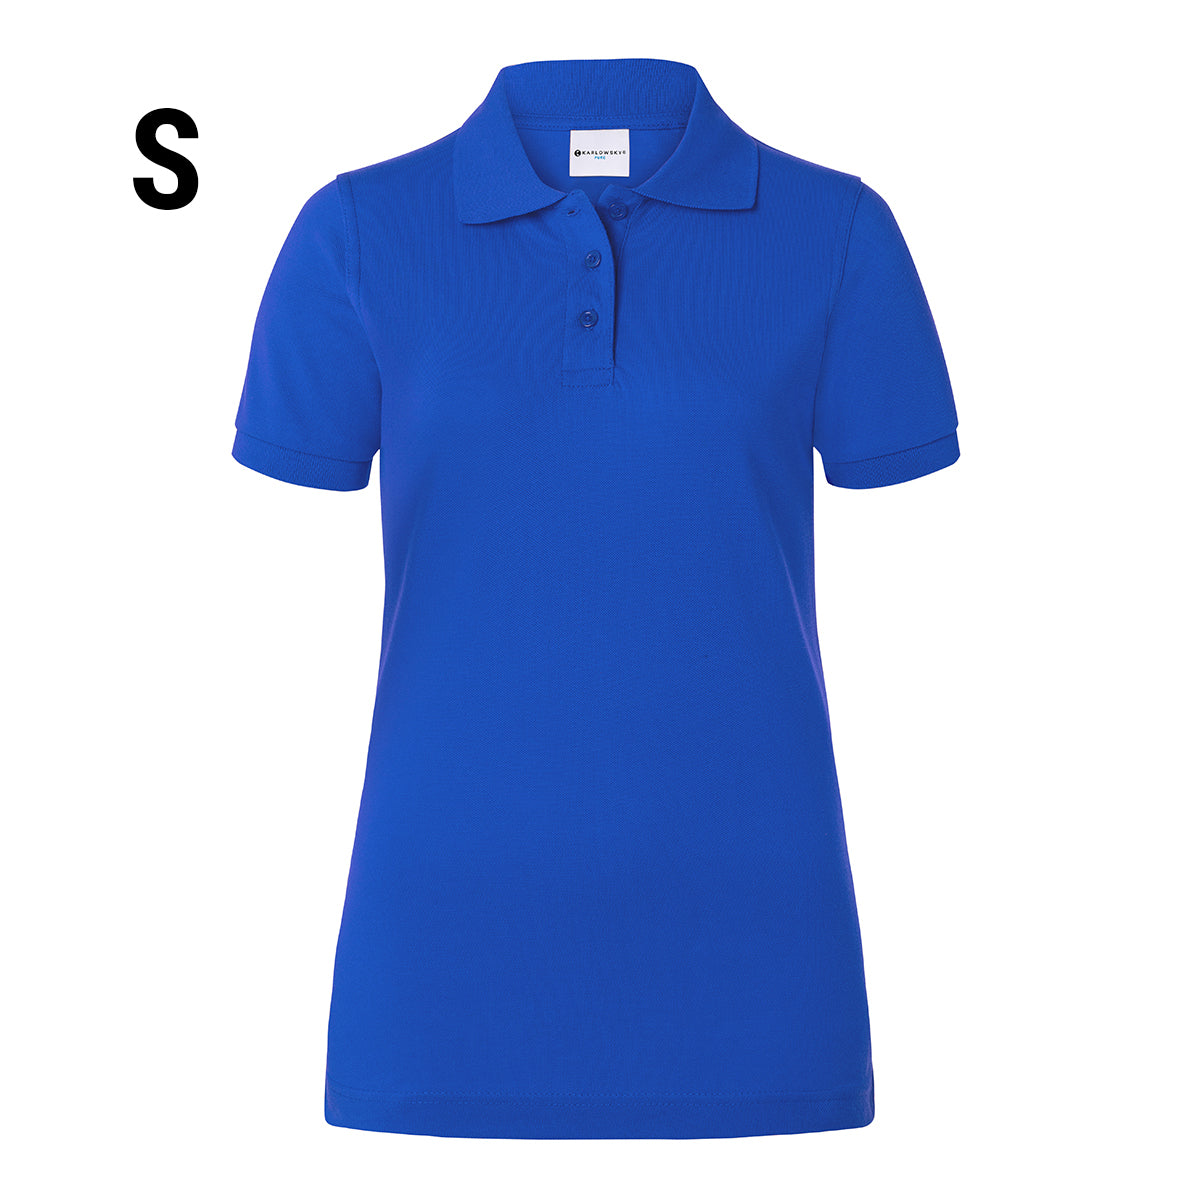 Karlowsky - Arbejdsbeklædning Basic Poloshirt til damer - Blå - Størrelse: S